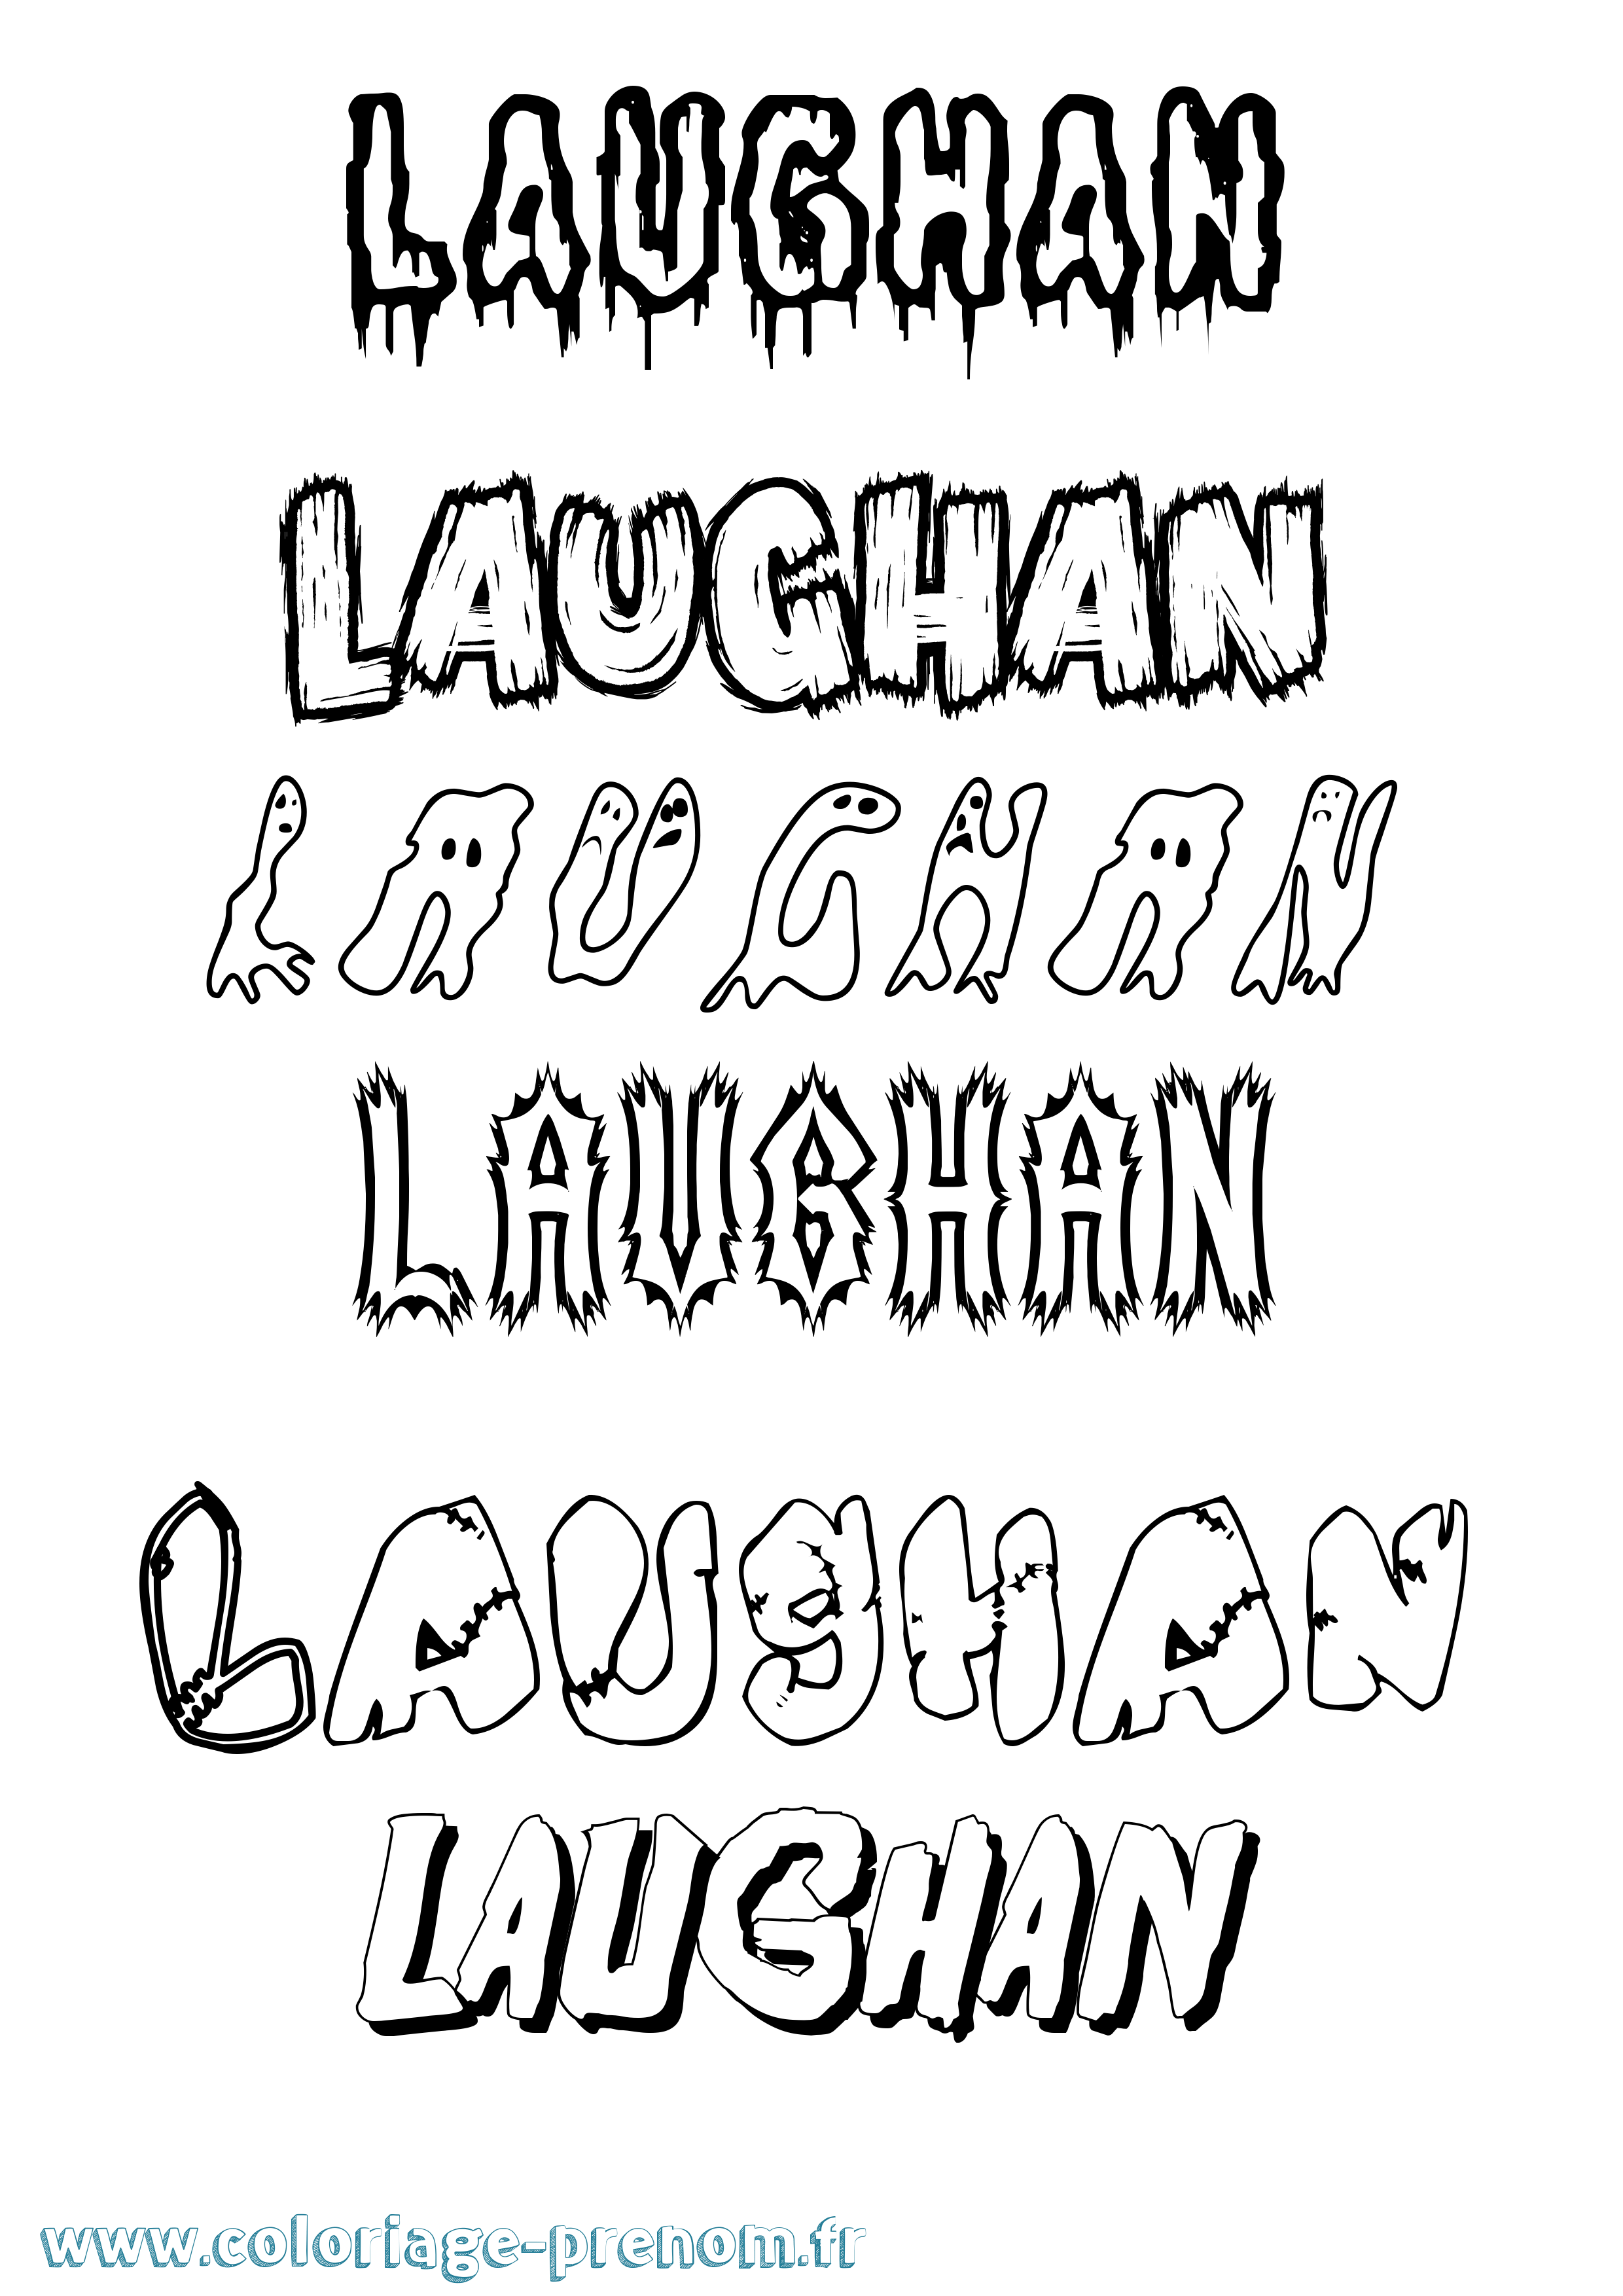 Coloriage prénom Laughan Frisson